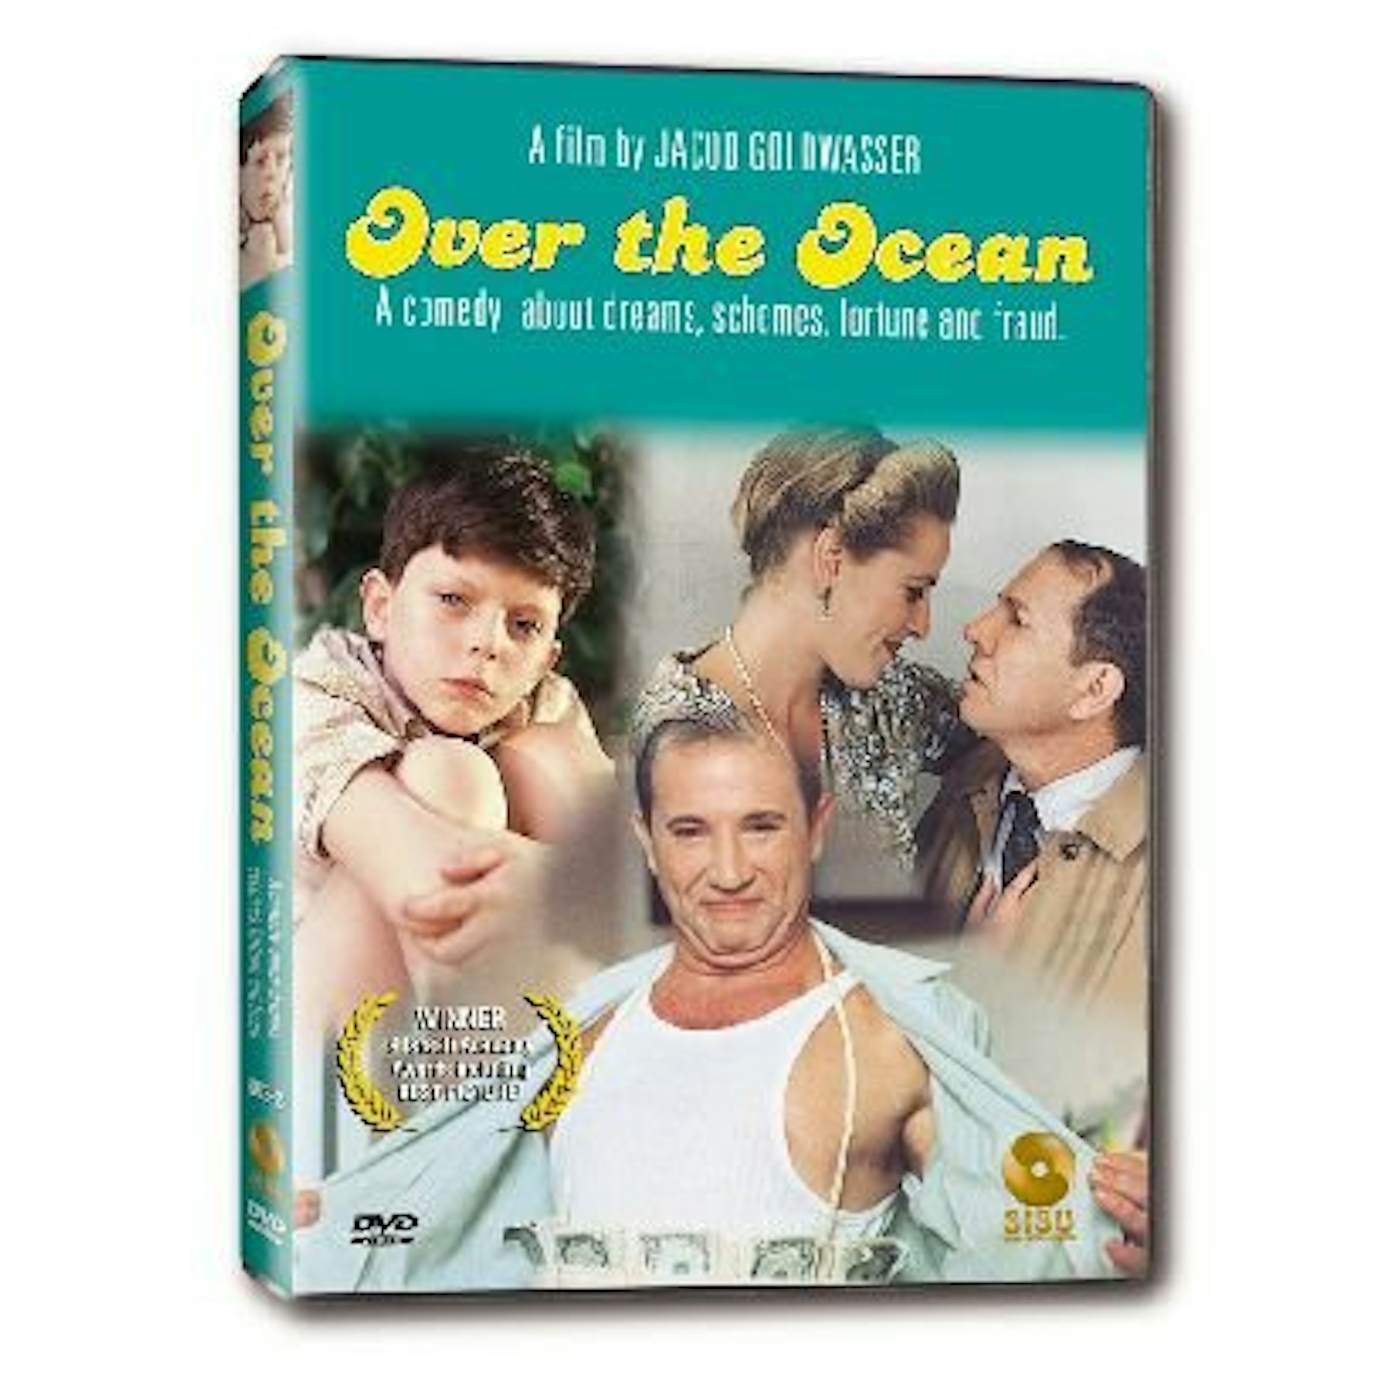 OVER THE OCEAN (1992) DVD